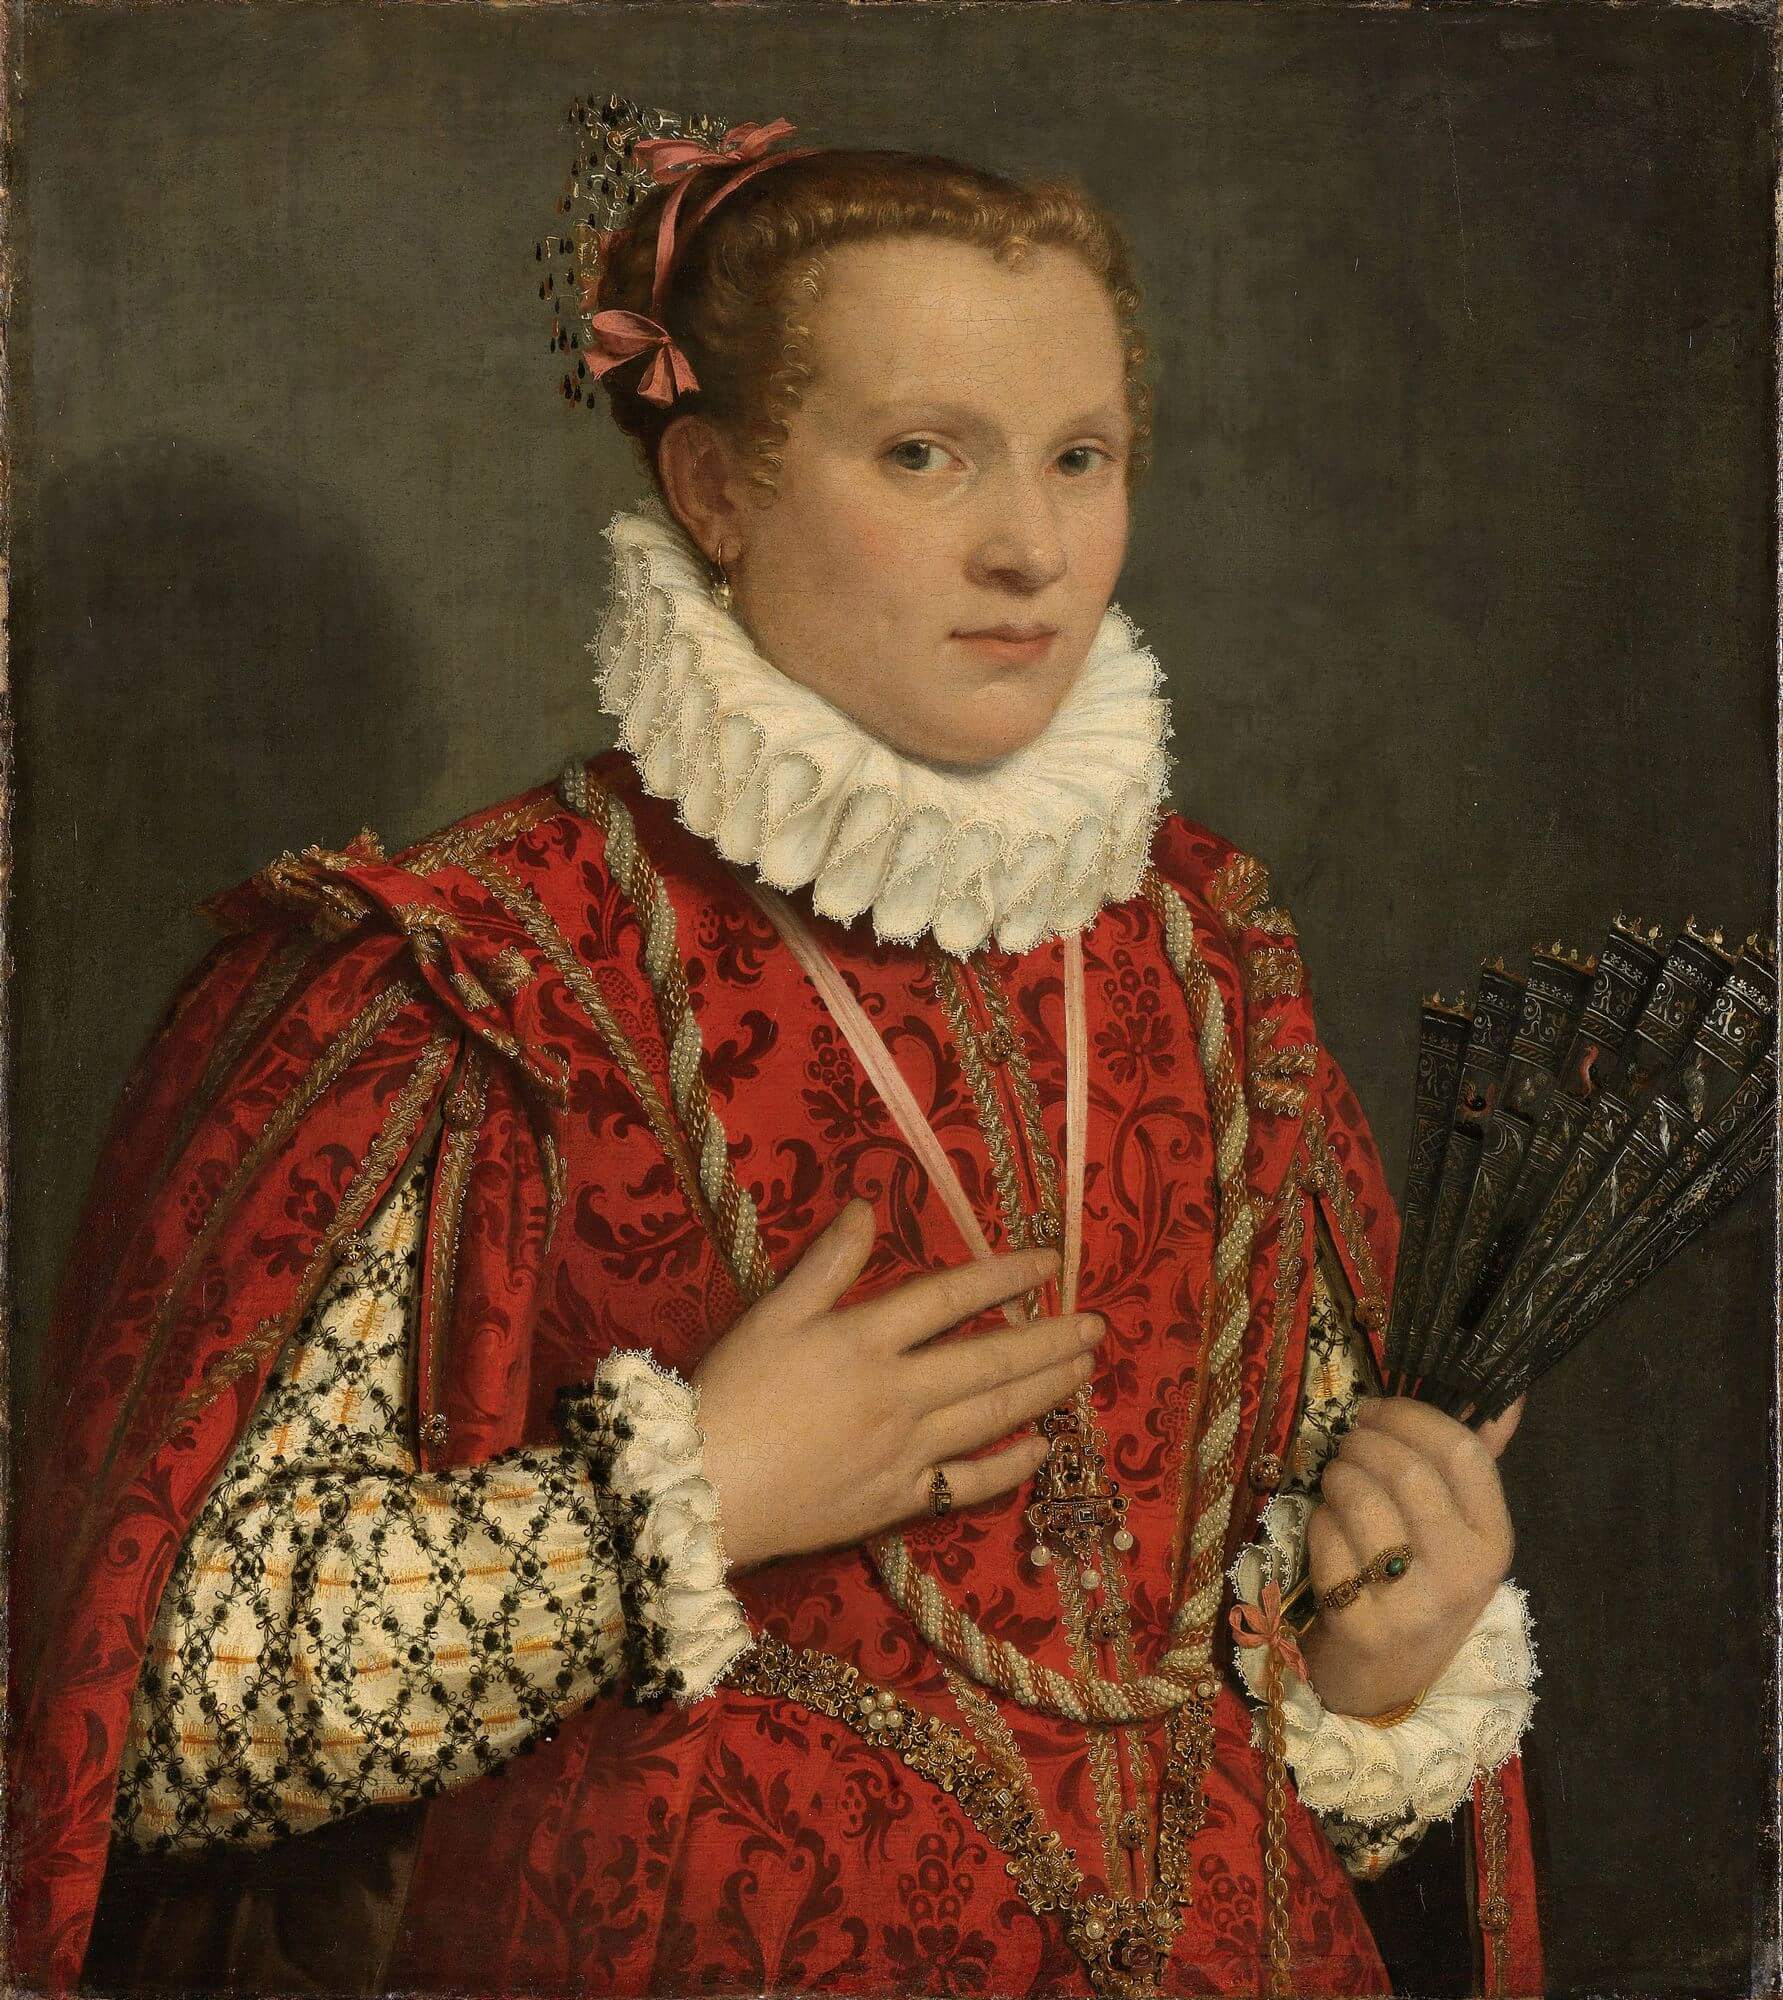 Kobieta w wytwornym czerwonym stroju, z białą kryzą, trzymająca wachlarz w lewej dłoni.